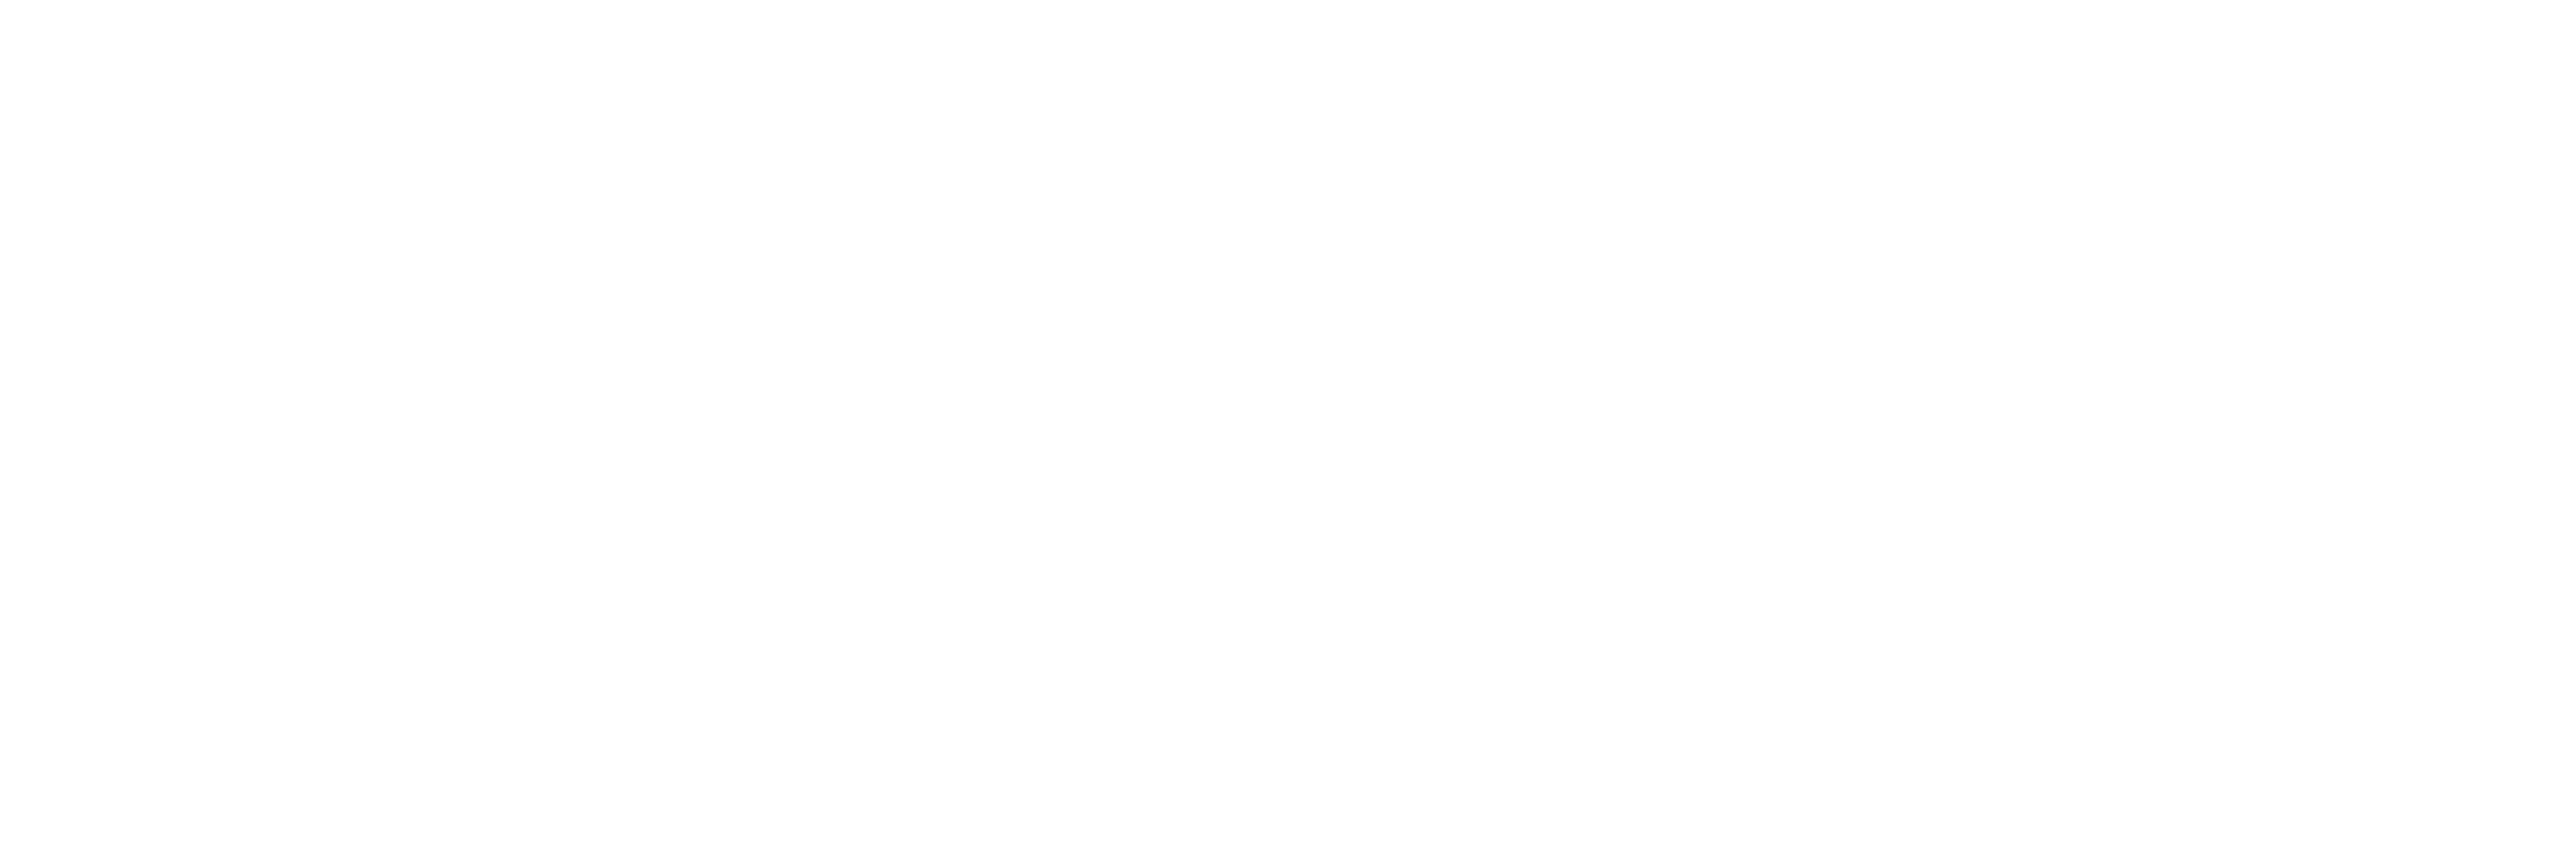 DataPark.ro